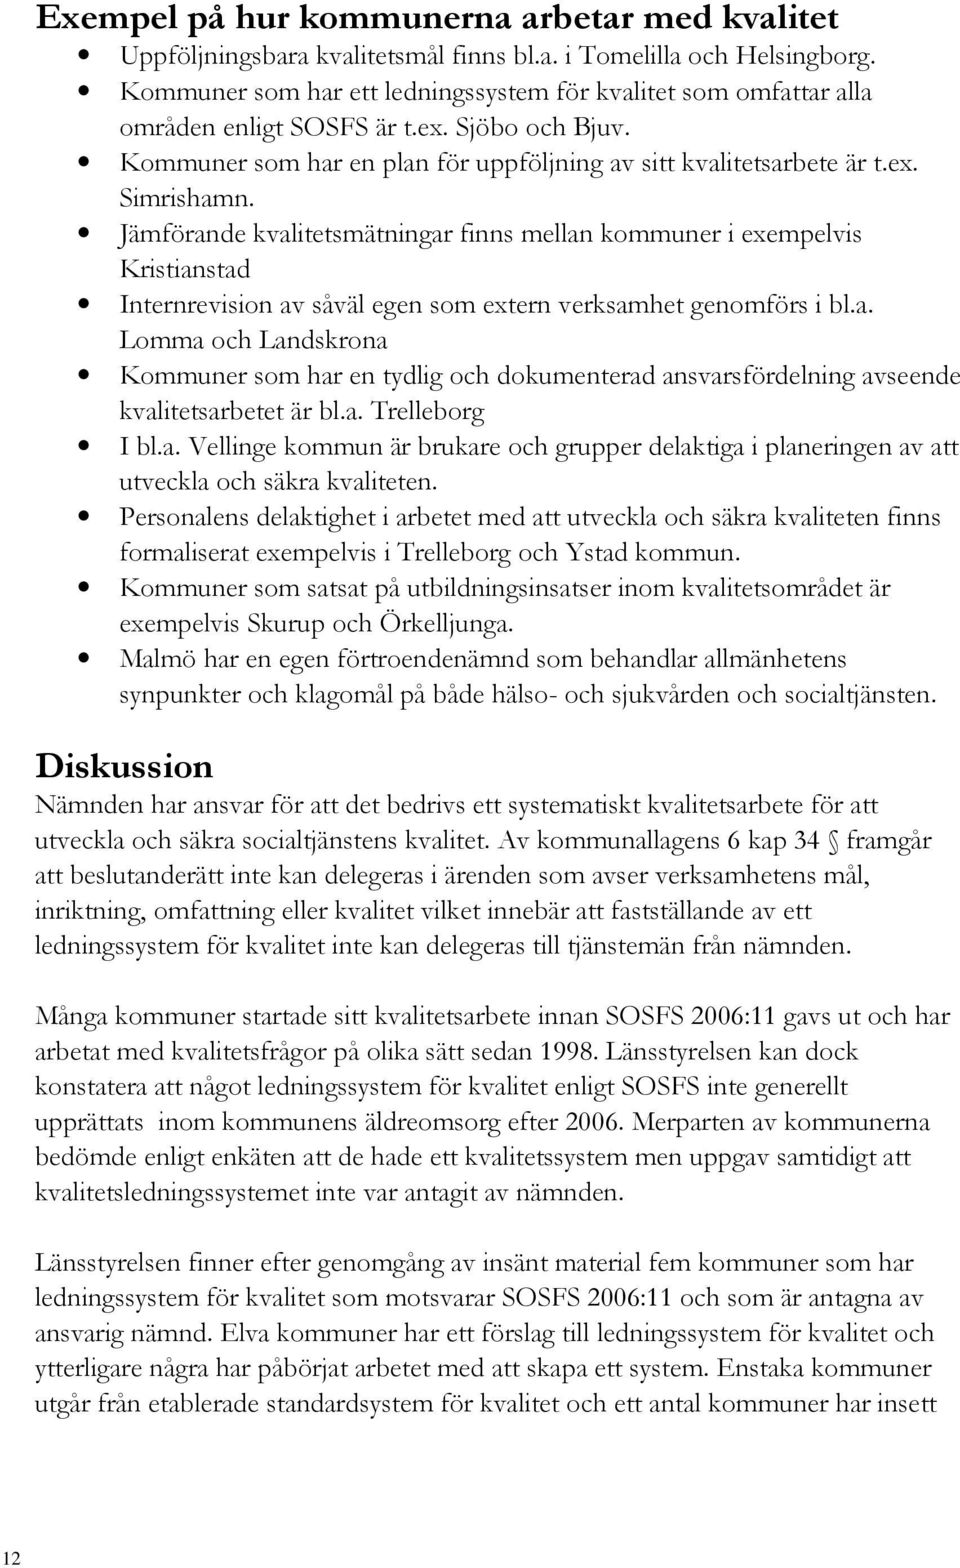 Jämförande kvalitetsmätningar finns mellan kommuner i exempelvis Kristianstad Internrevision av såväl egen som extern verksamhet genomförs i bl.a. Lomma och Landskrona Kommuner som har en tydlig och dokumenterad ansvarsfördelning avseende kvalitetsarbetet är bl.